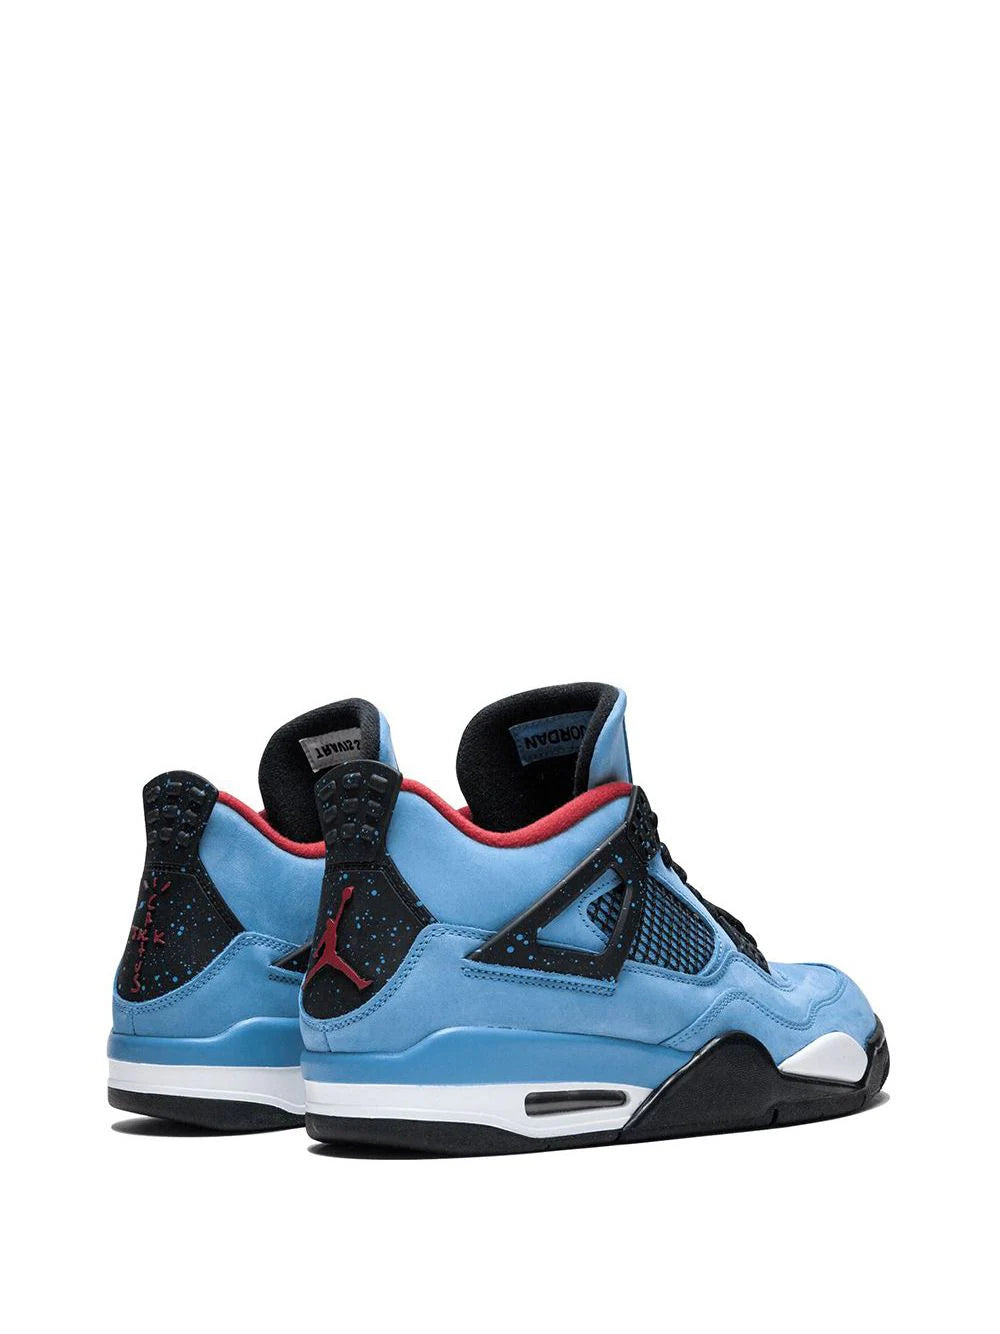 Jordan x Travis Scott Air Jordan 4 Retro "Cactus Jack" sneakers